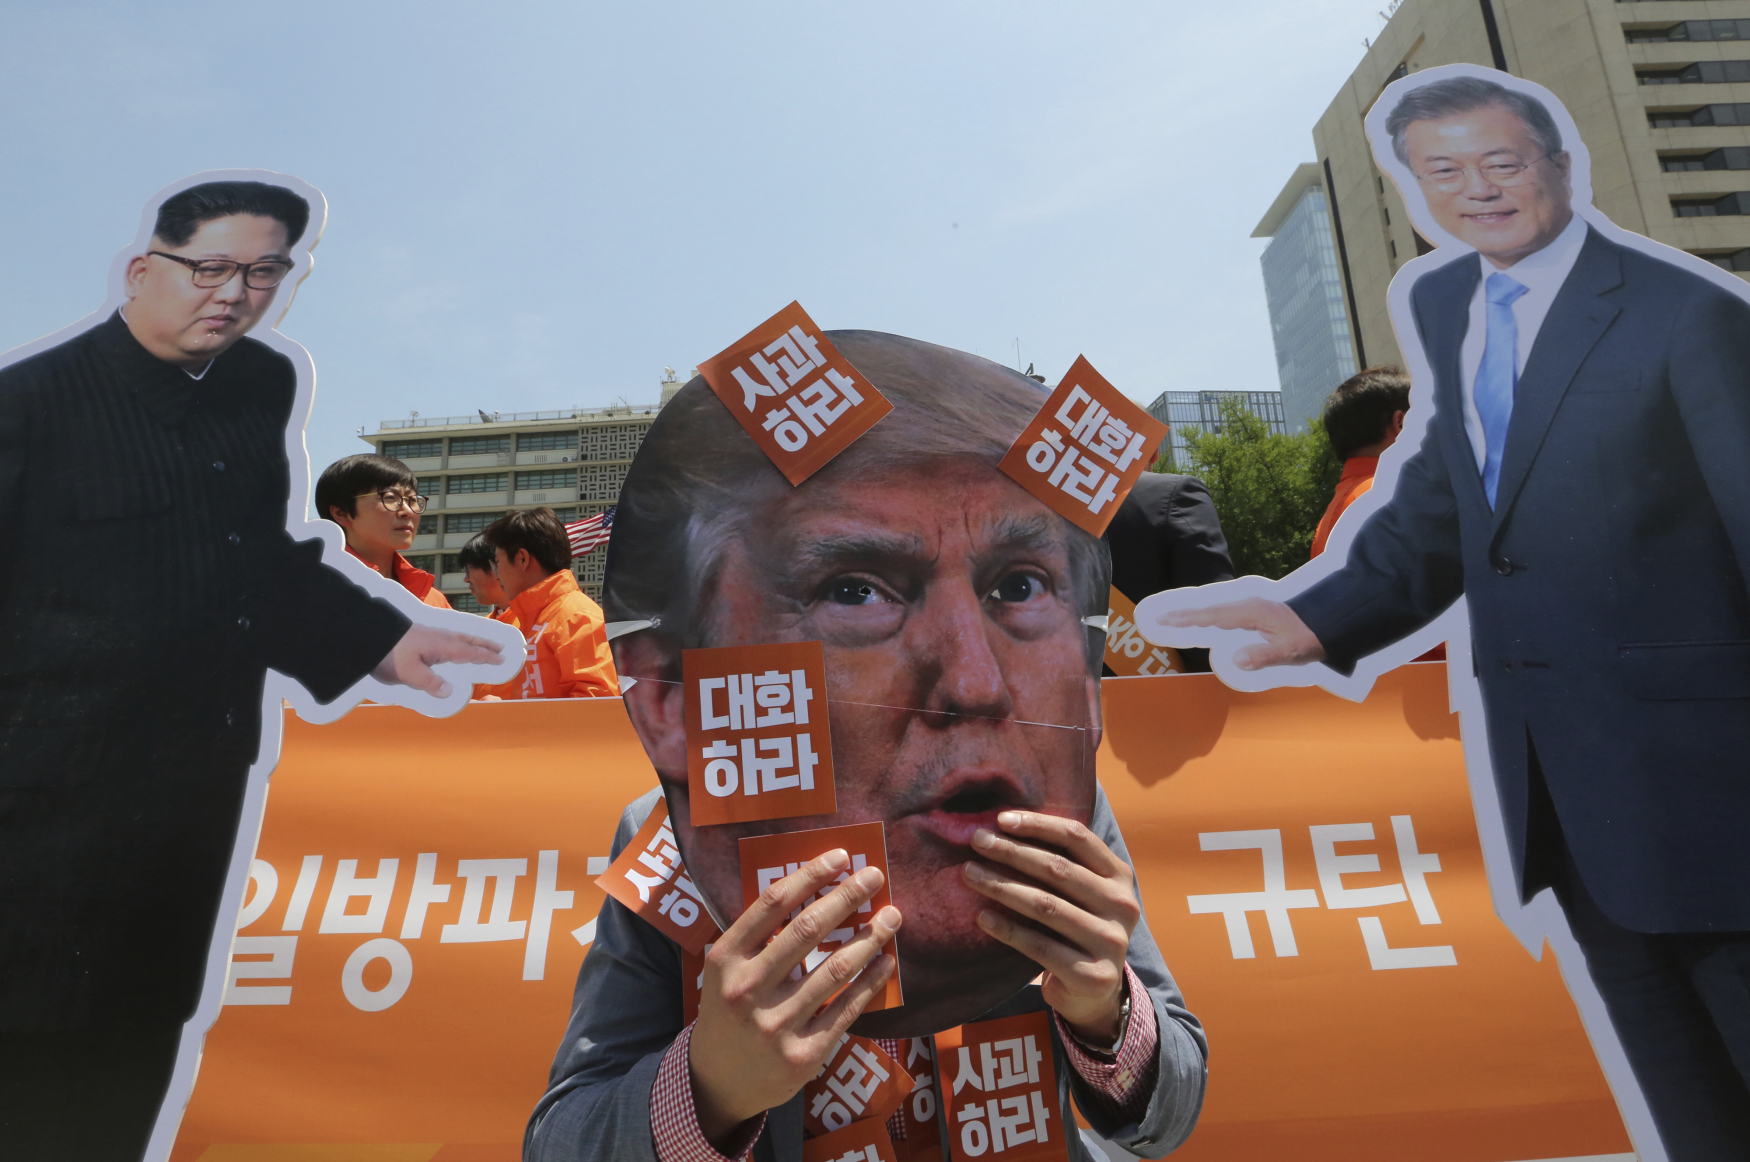 Severokorejský komunistický vládce Kim III. tak dlouho hrozil zrušením schůzky s americkým prezidentem Trumpem, až tento summit zrušil Trump